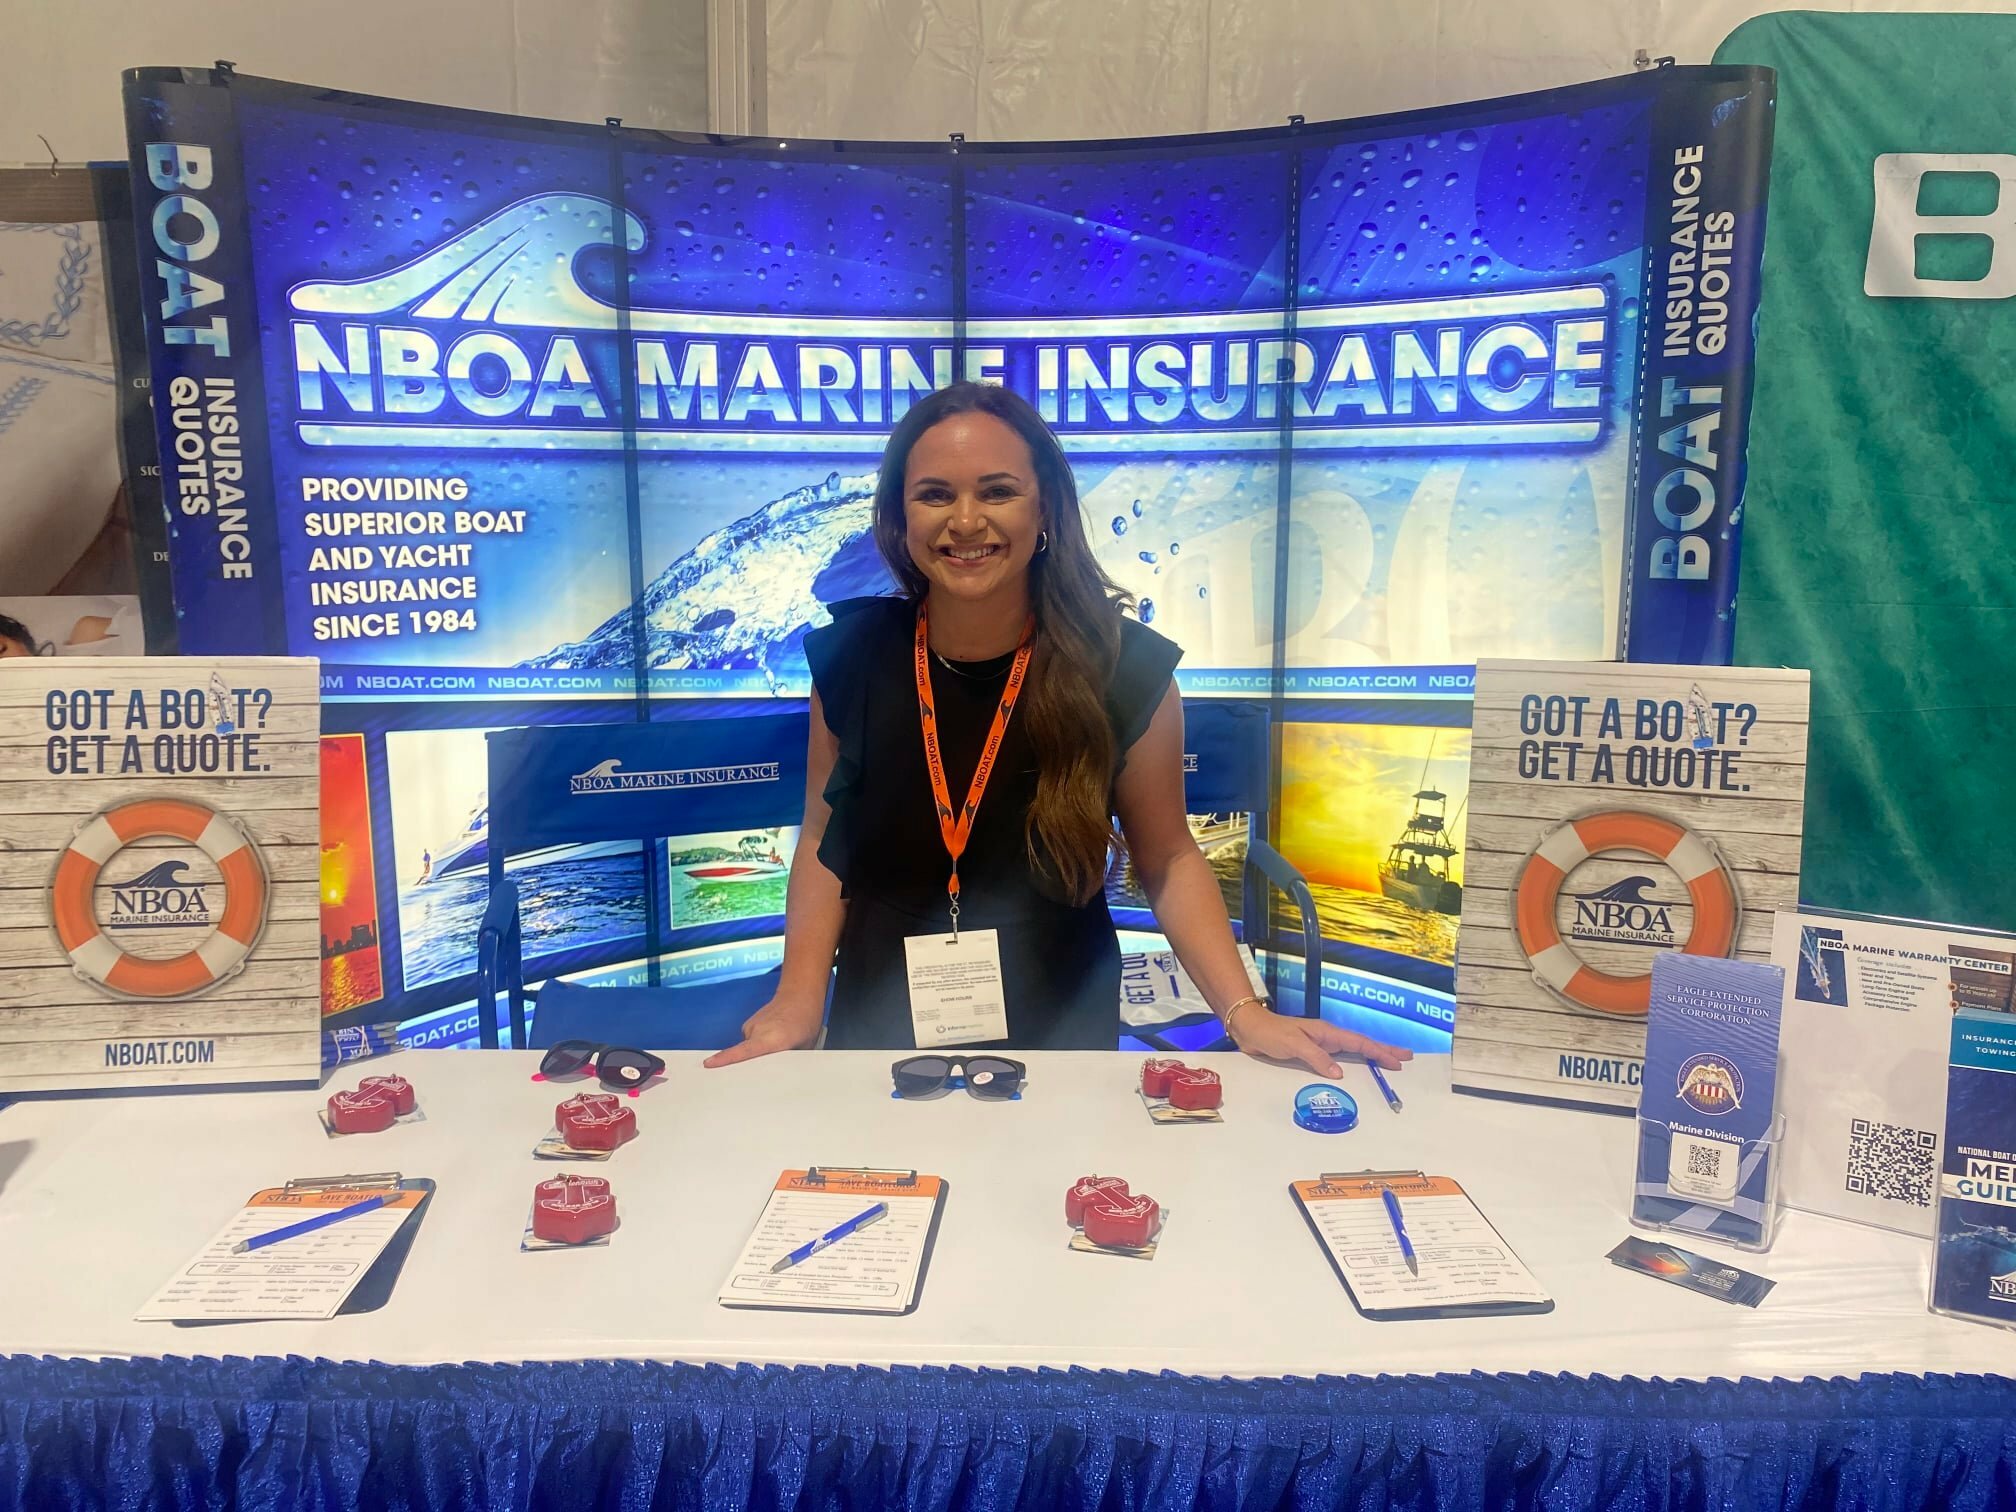 NBOA Marine Insurance